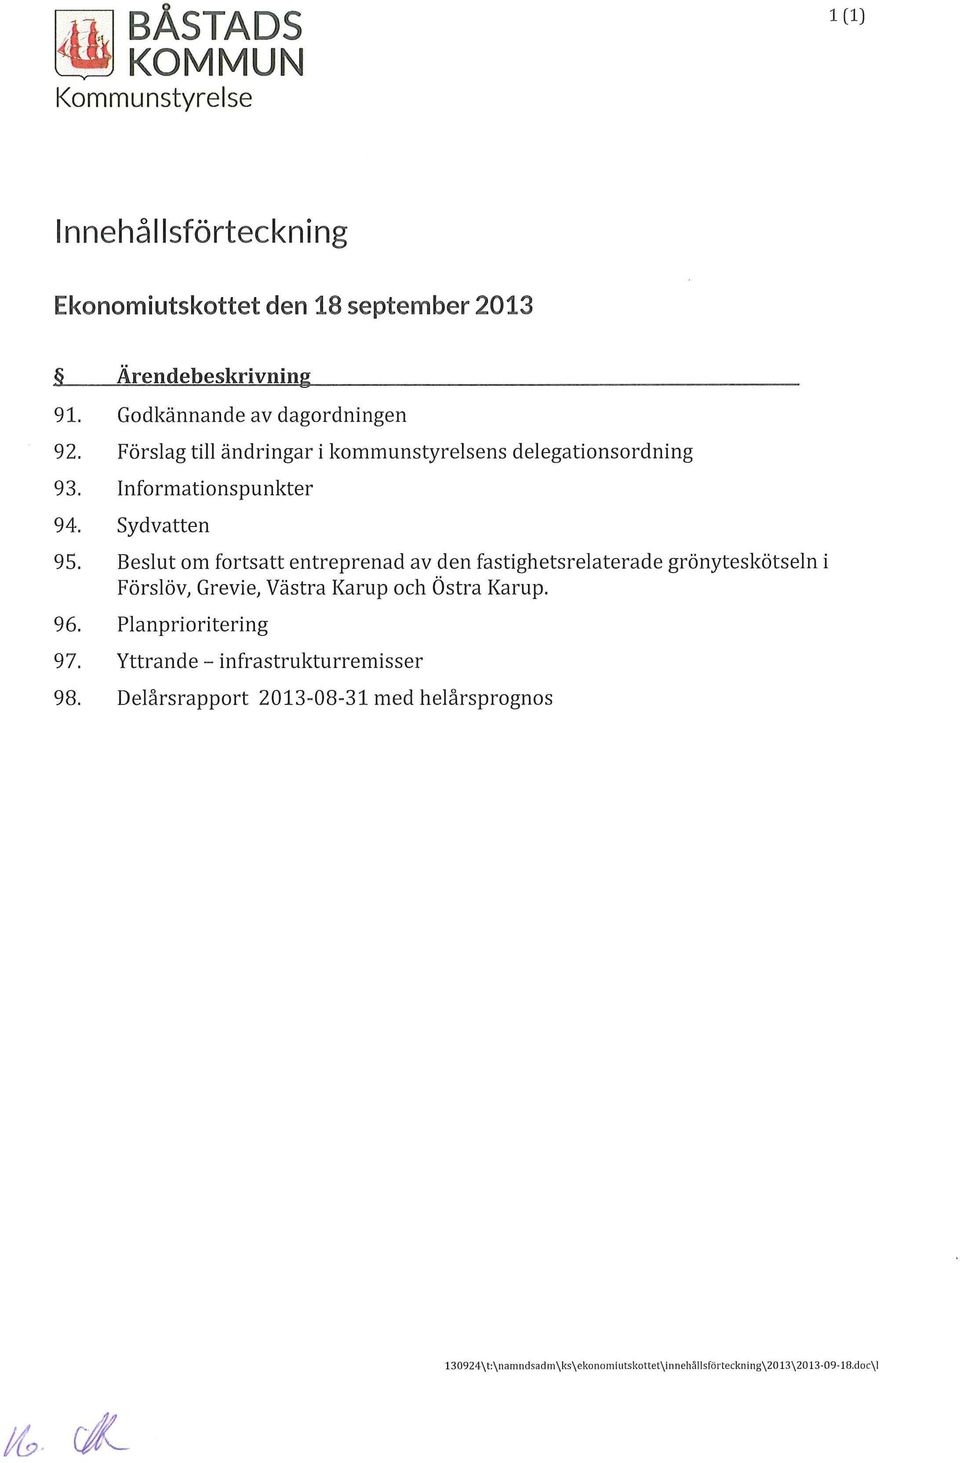 Beslut om fortsatt entreprenad av den fastighetsrelaterade grönyteskötseln i Förslöv, Grevie, Västra Karup och Östra Karup. 96.